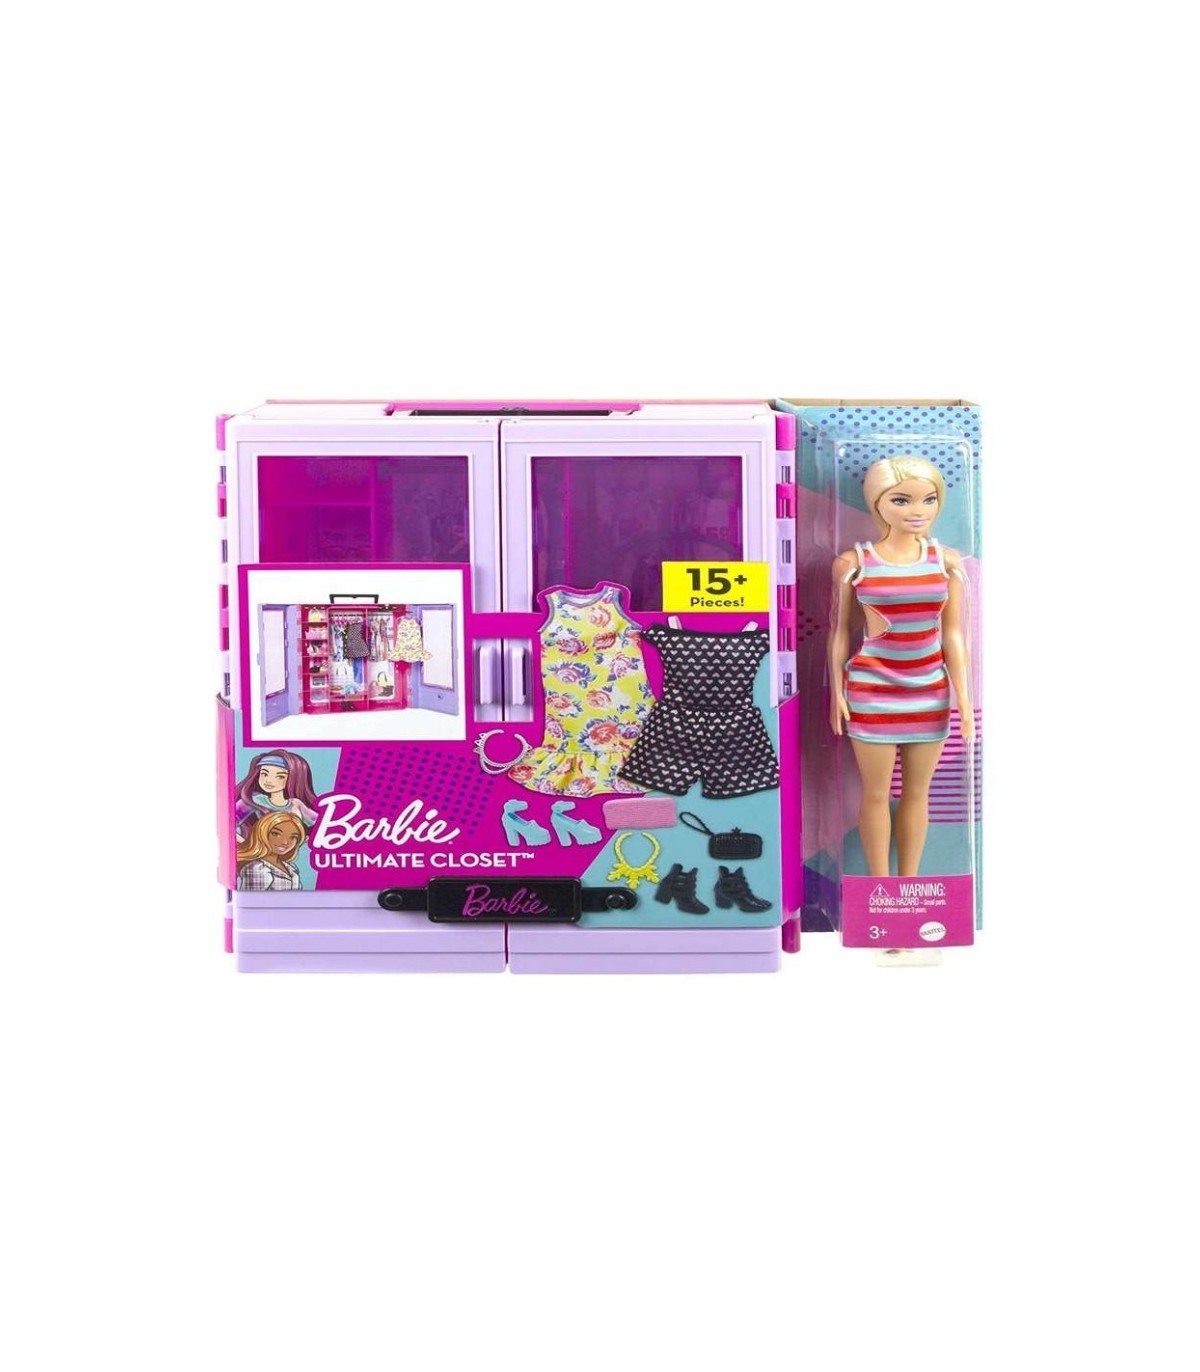 Compra ya tu Barbie Armario portátil para ropa de muñeca, 3 looks completos, 6 y muñeca por solo 44,99 €